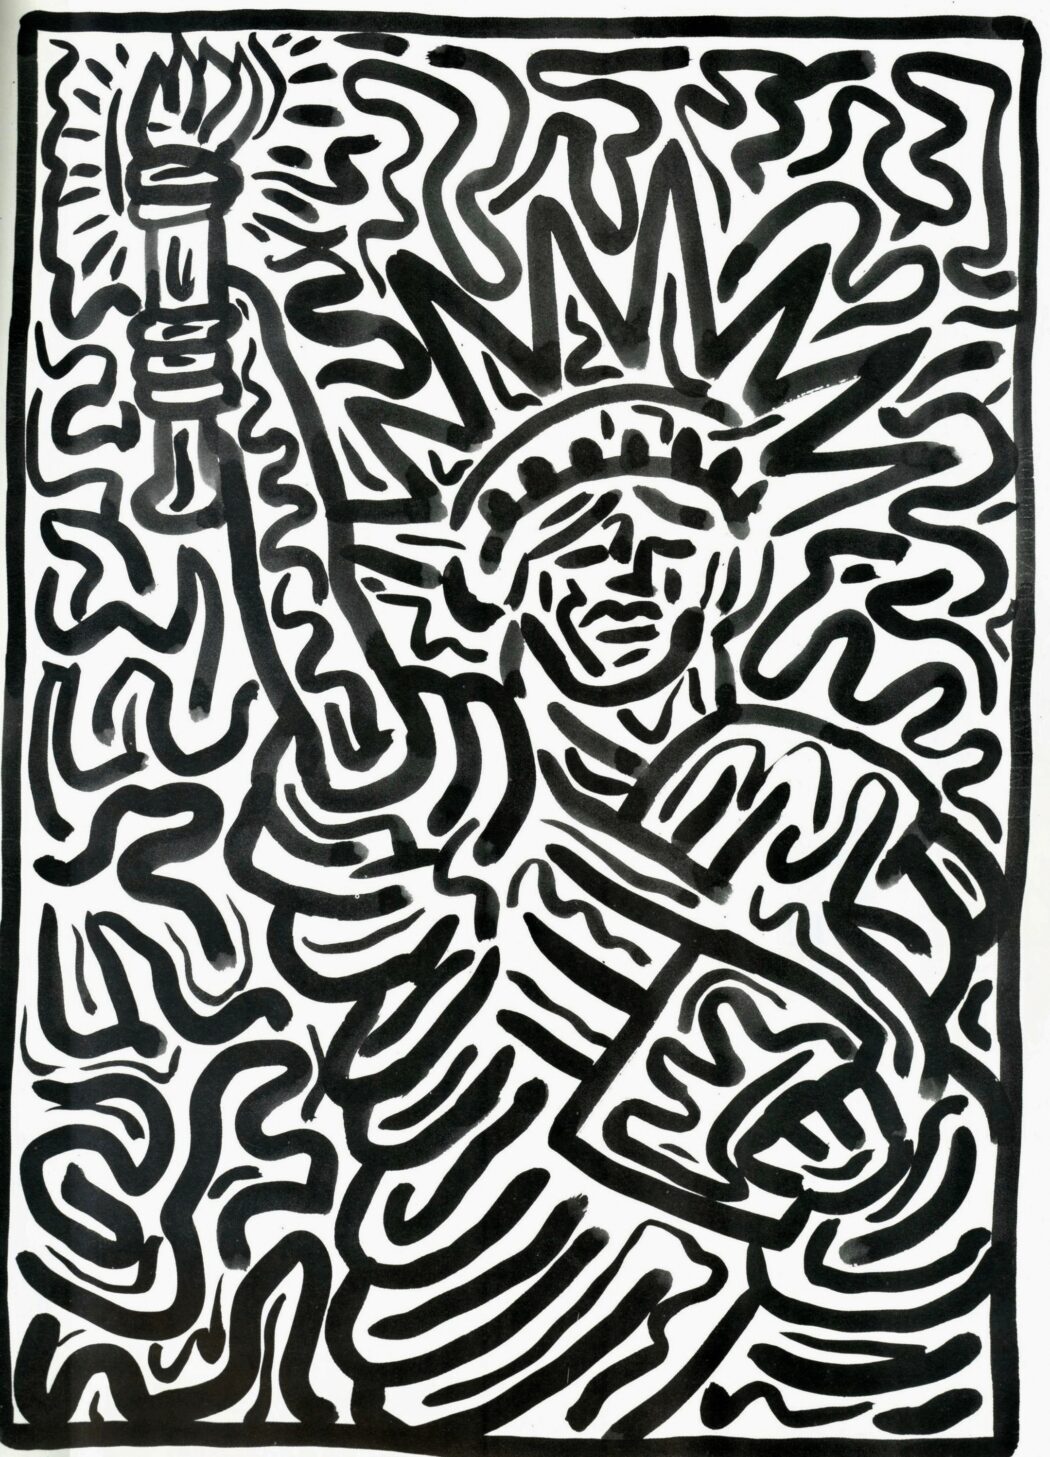 Keith Haring
Statua della Libertà come i diluvi di Leonardo da Vinci
1986
acquerello su carta pesante 75×65 cm
Lamporecchio, Nuova Fondazione Rossana e Carlo Pedretti